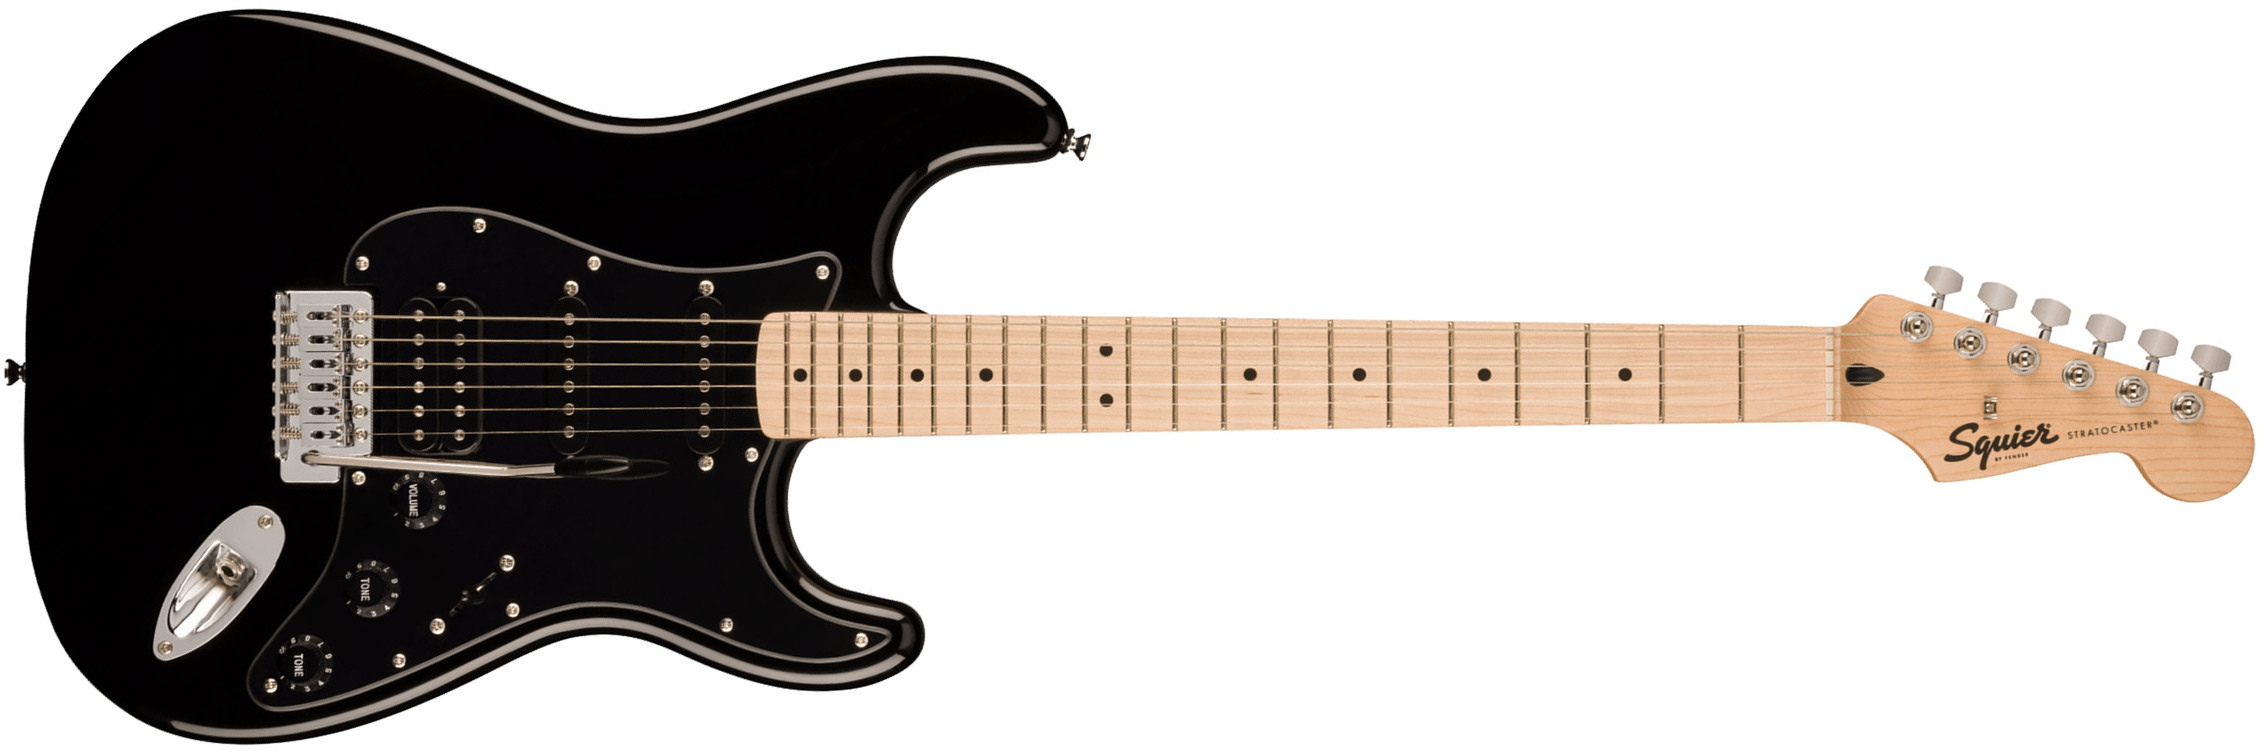 Squier Strat Sonic Hss Trem Mn - Black - Str shape electric guitar - Main picture